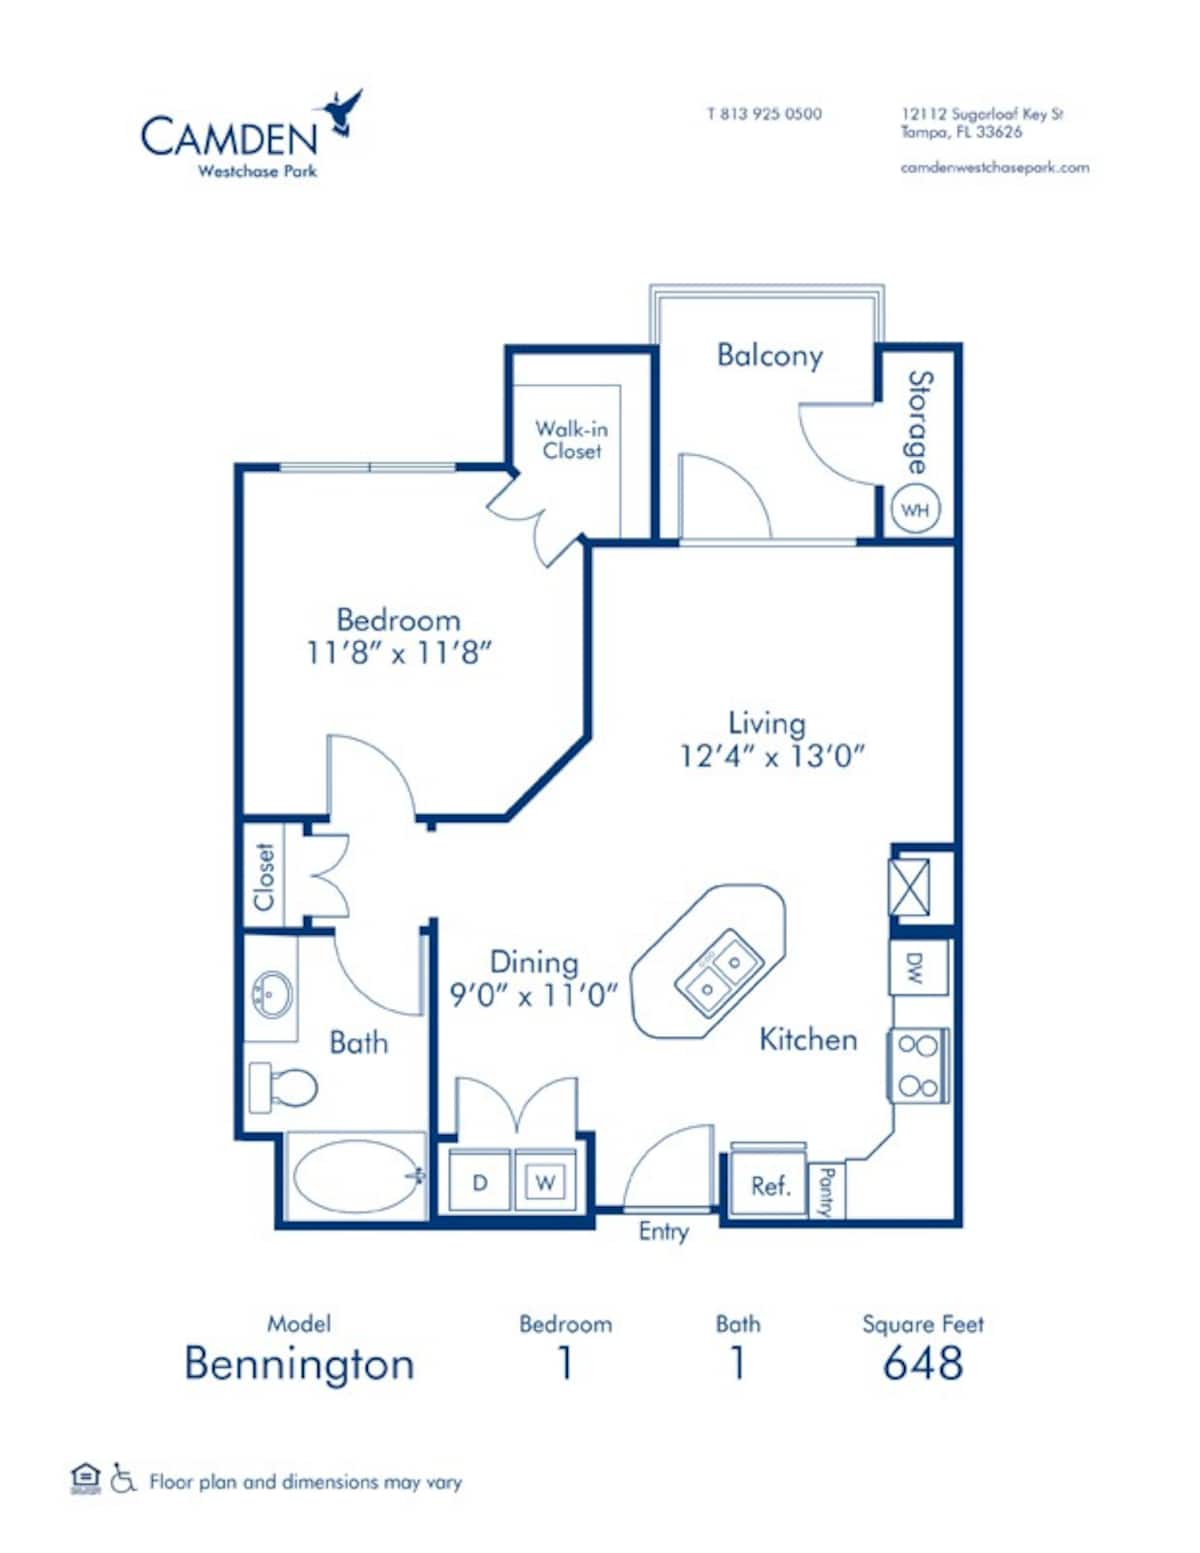 Floorplan diagram for Bennington, showing 1 bedroom